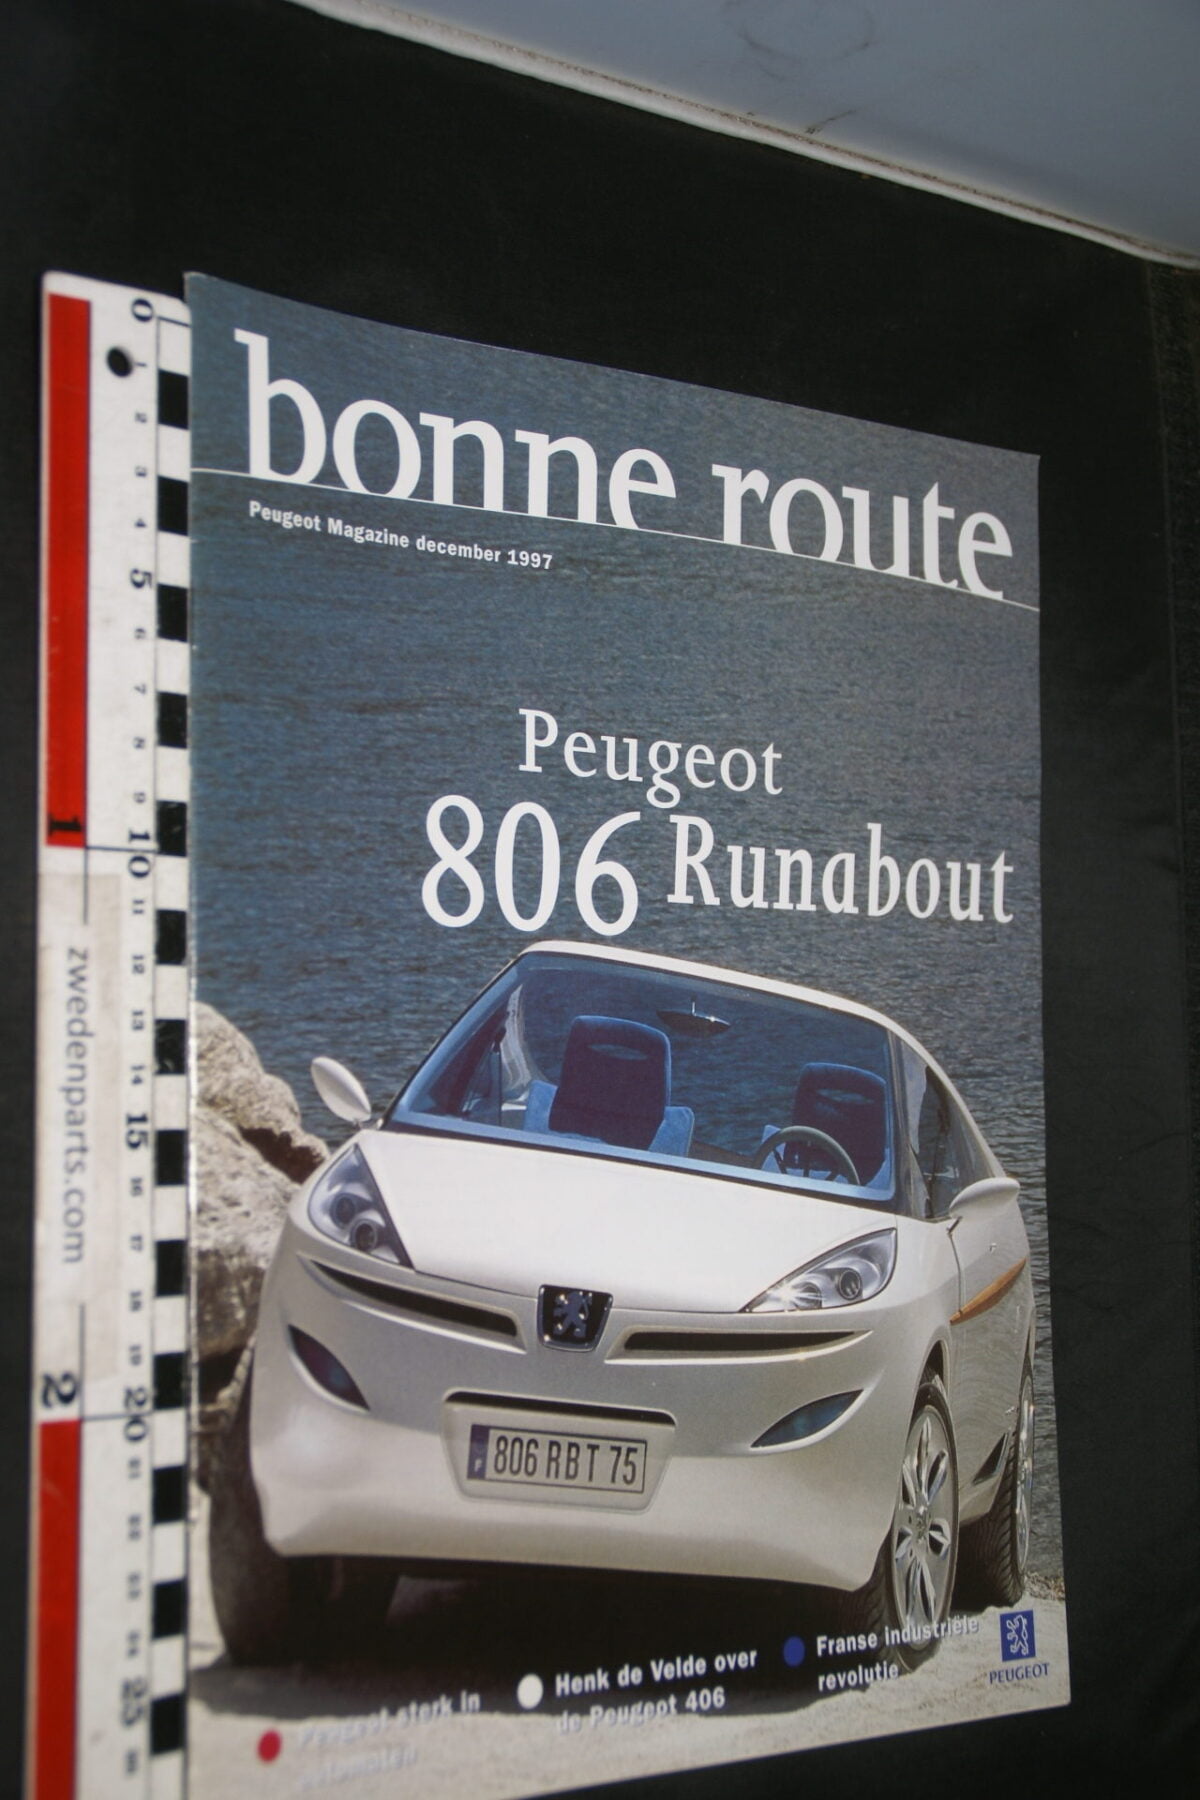 DSC08428 tijdschrift Peugeot Bonne Route 1997 december